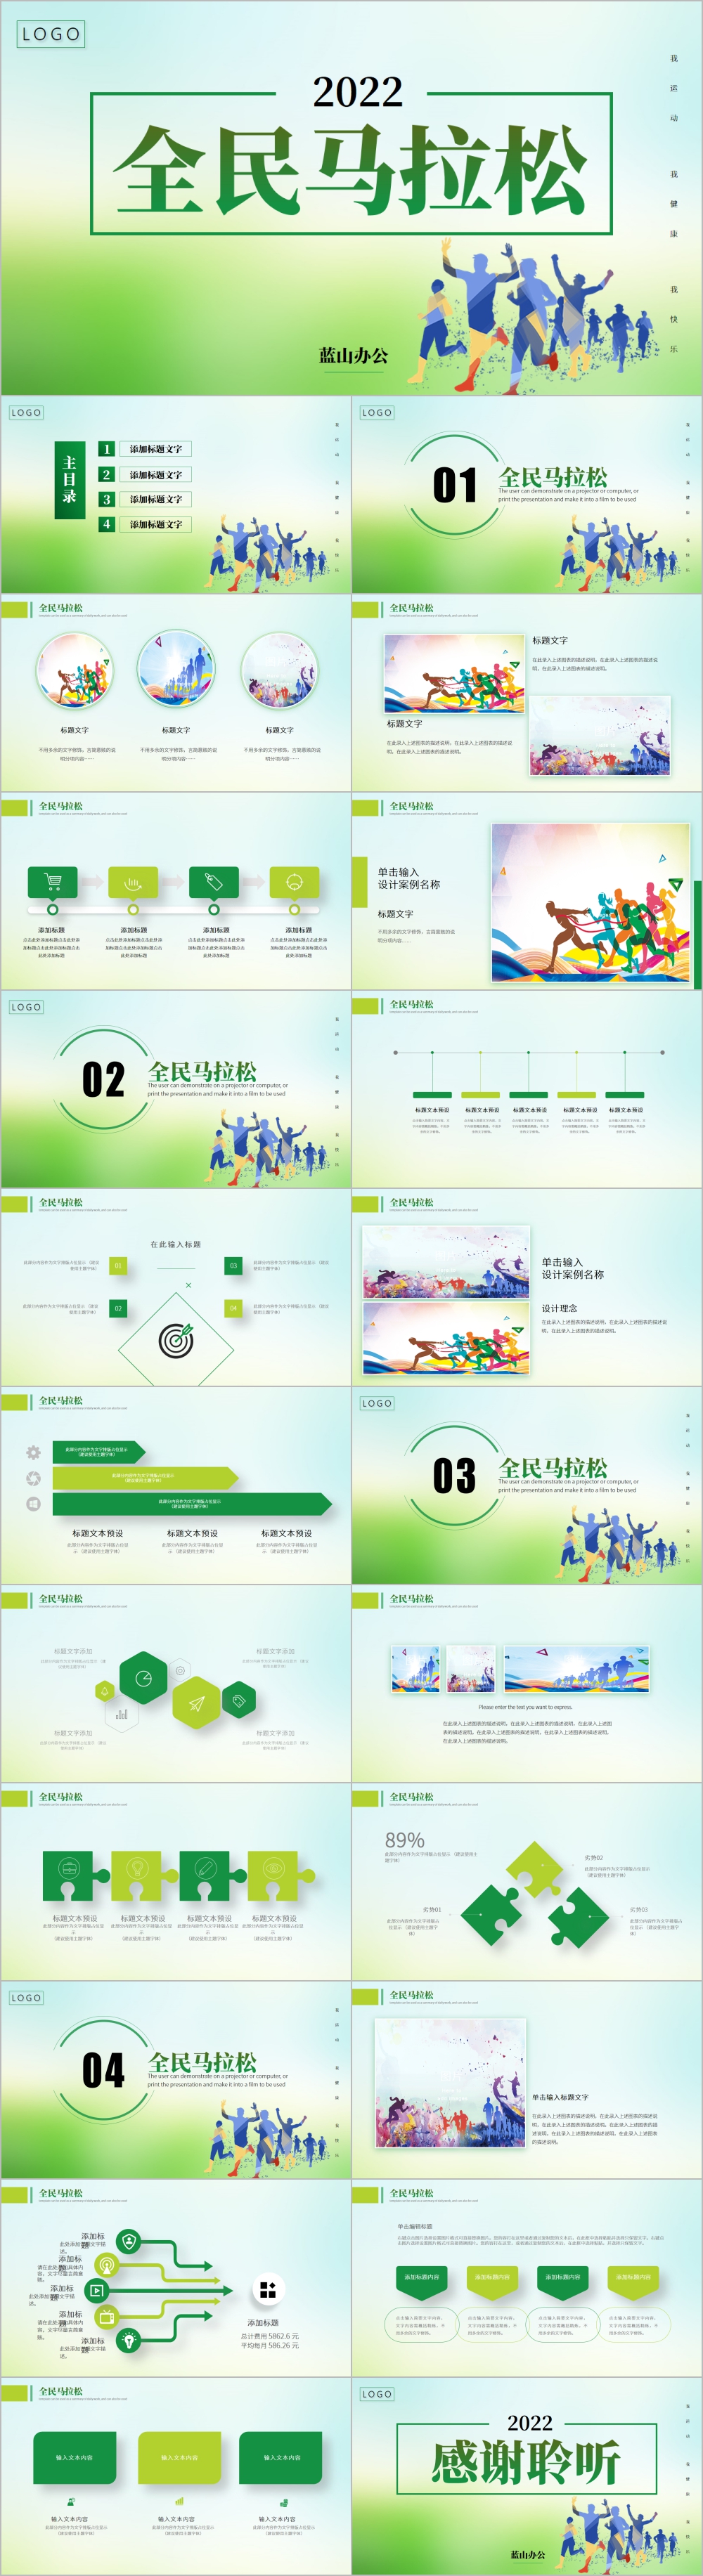 全民健身健康中国运动会跑步马拉松PPT模板